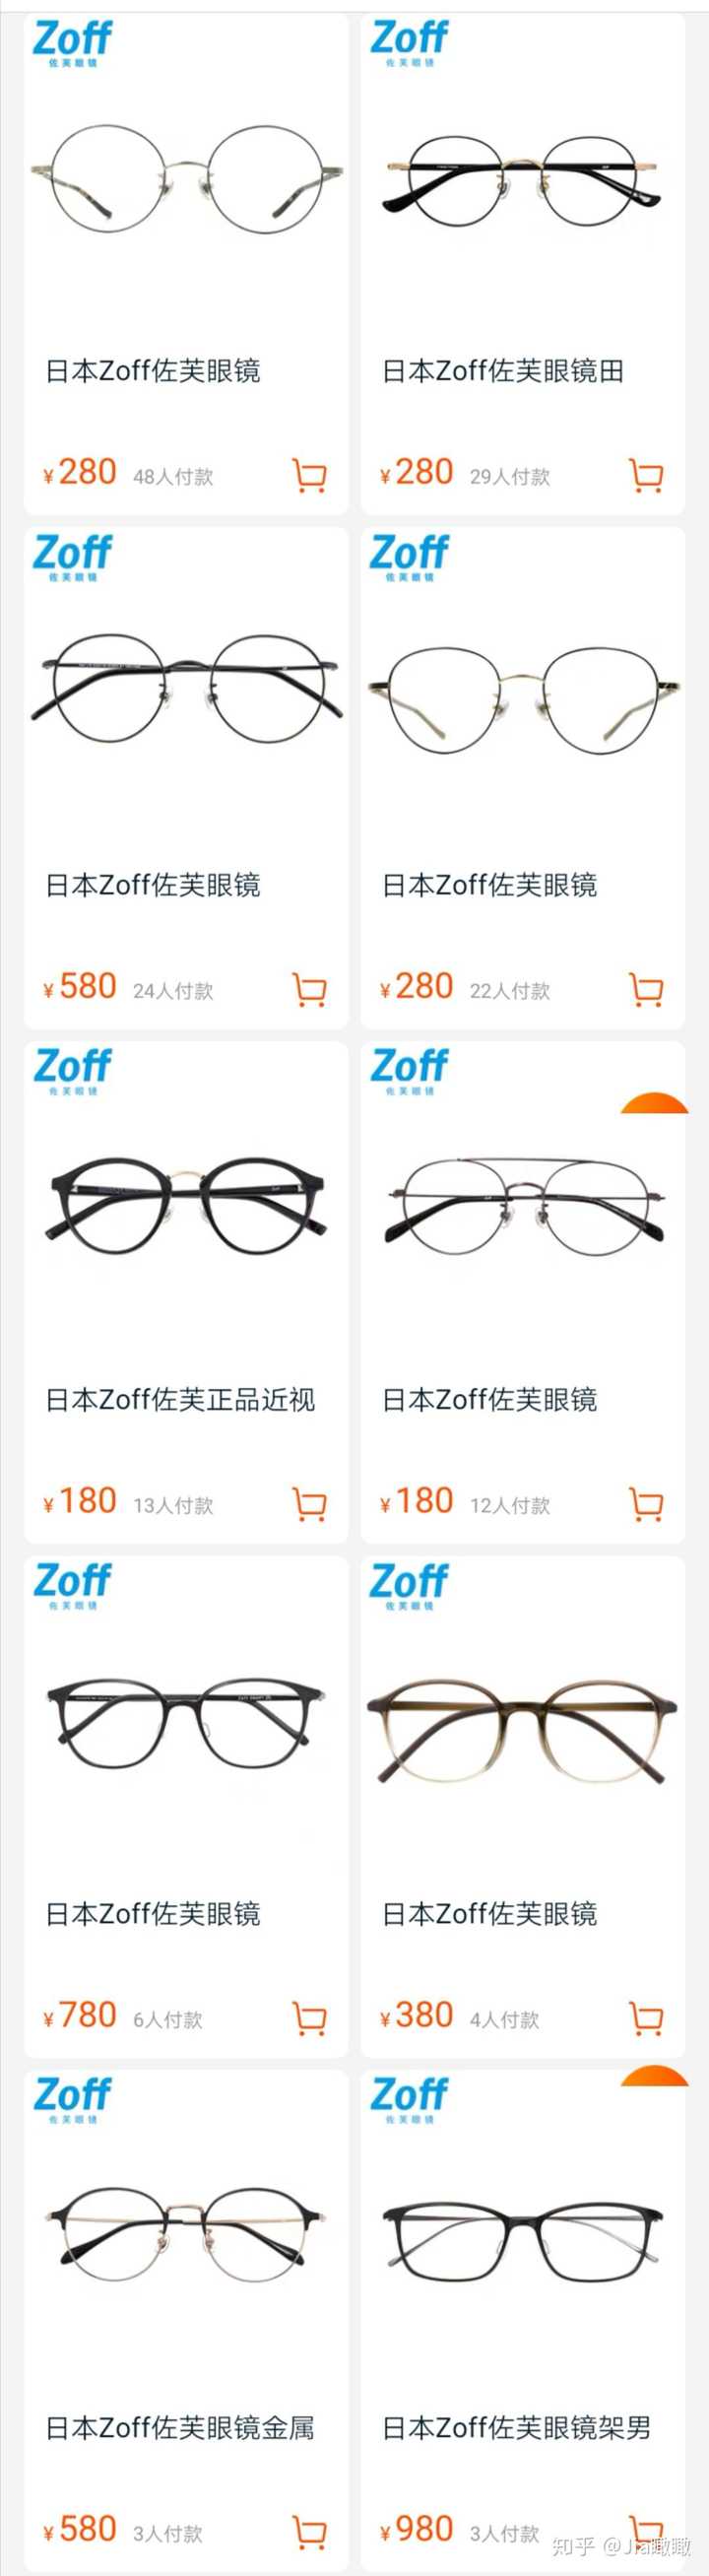 网上哪里有卖这个复古细眼镜框 哪个牌子好 然后怎么到实体店配眼镜片 知乎